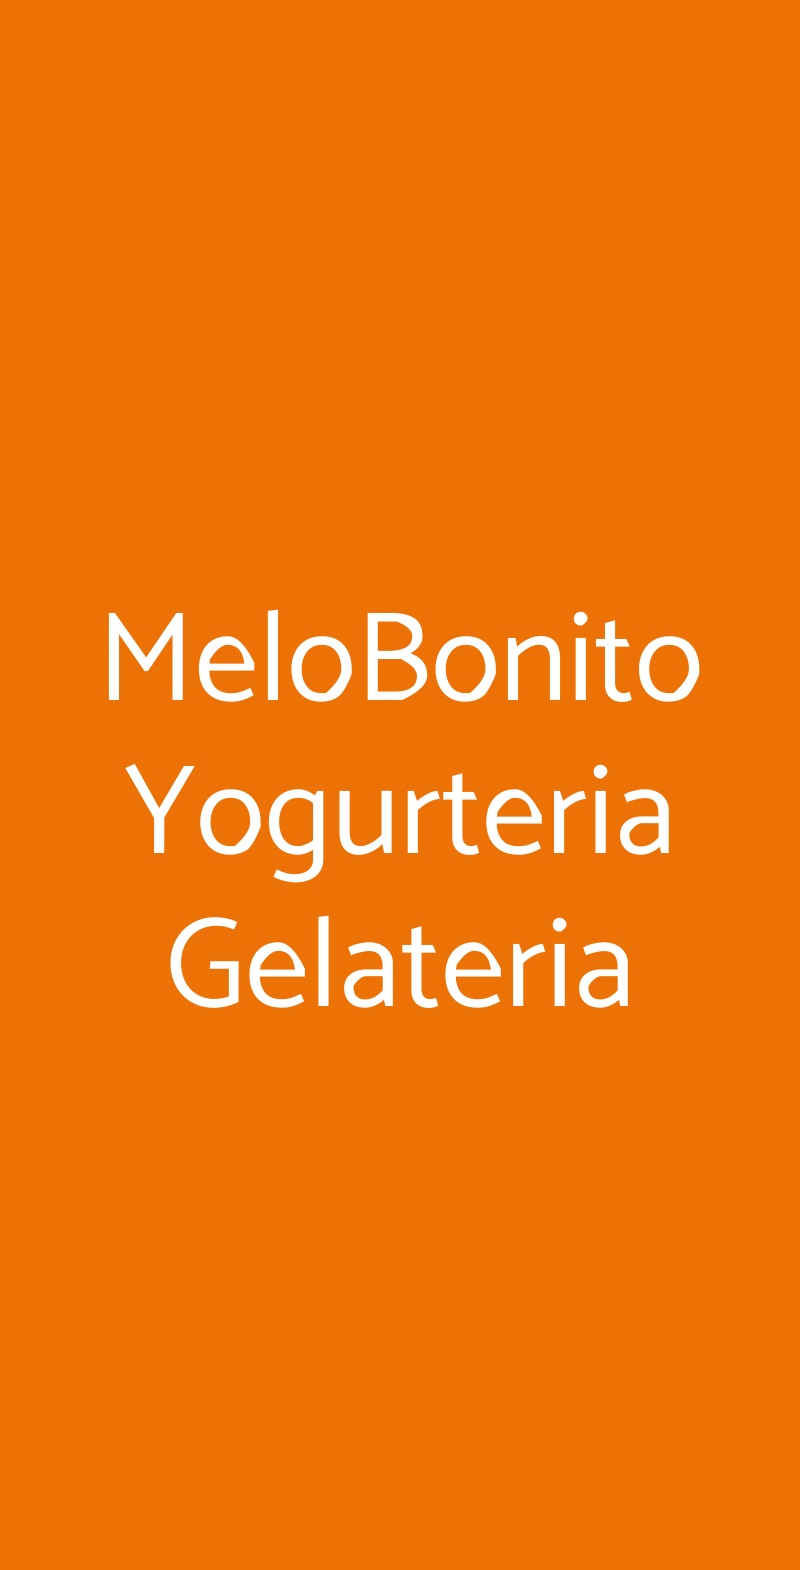 MeloBonito Yogurteria Gelateria Cesena menù 1 pagina